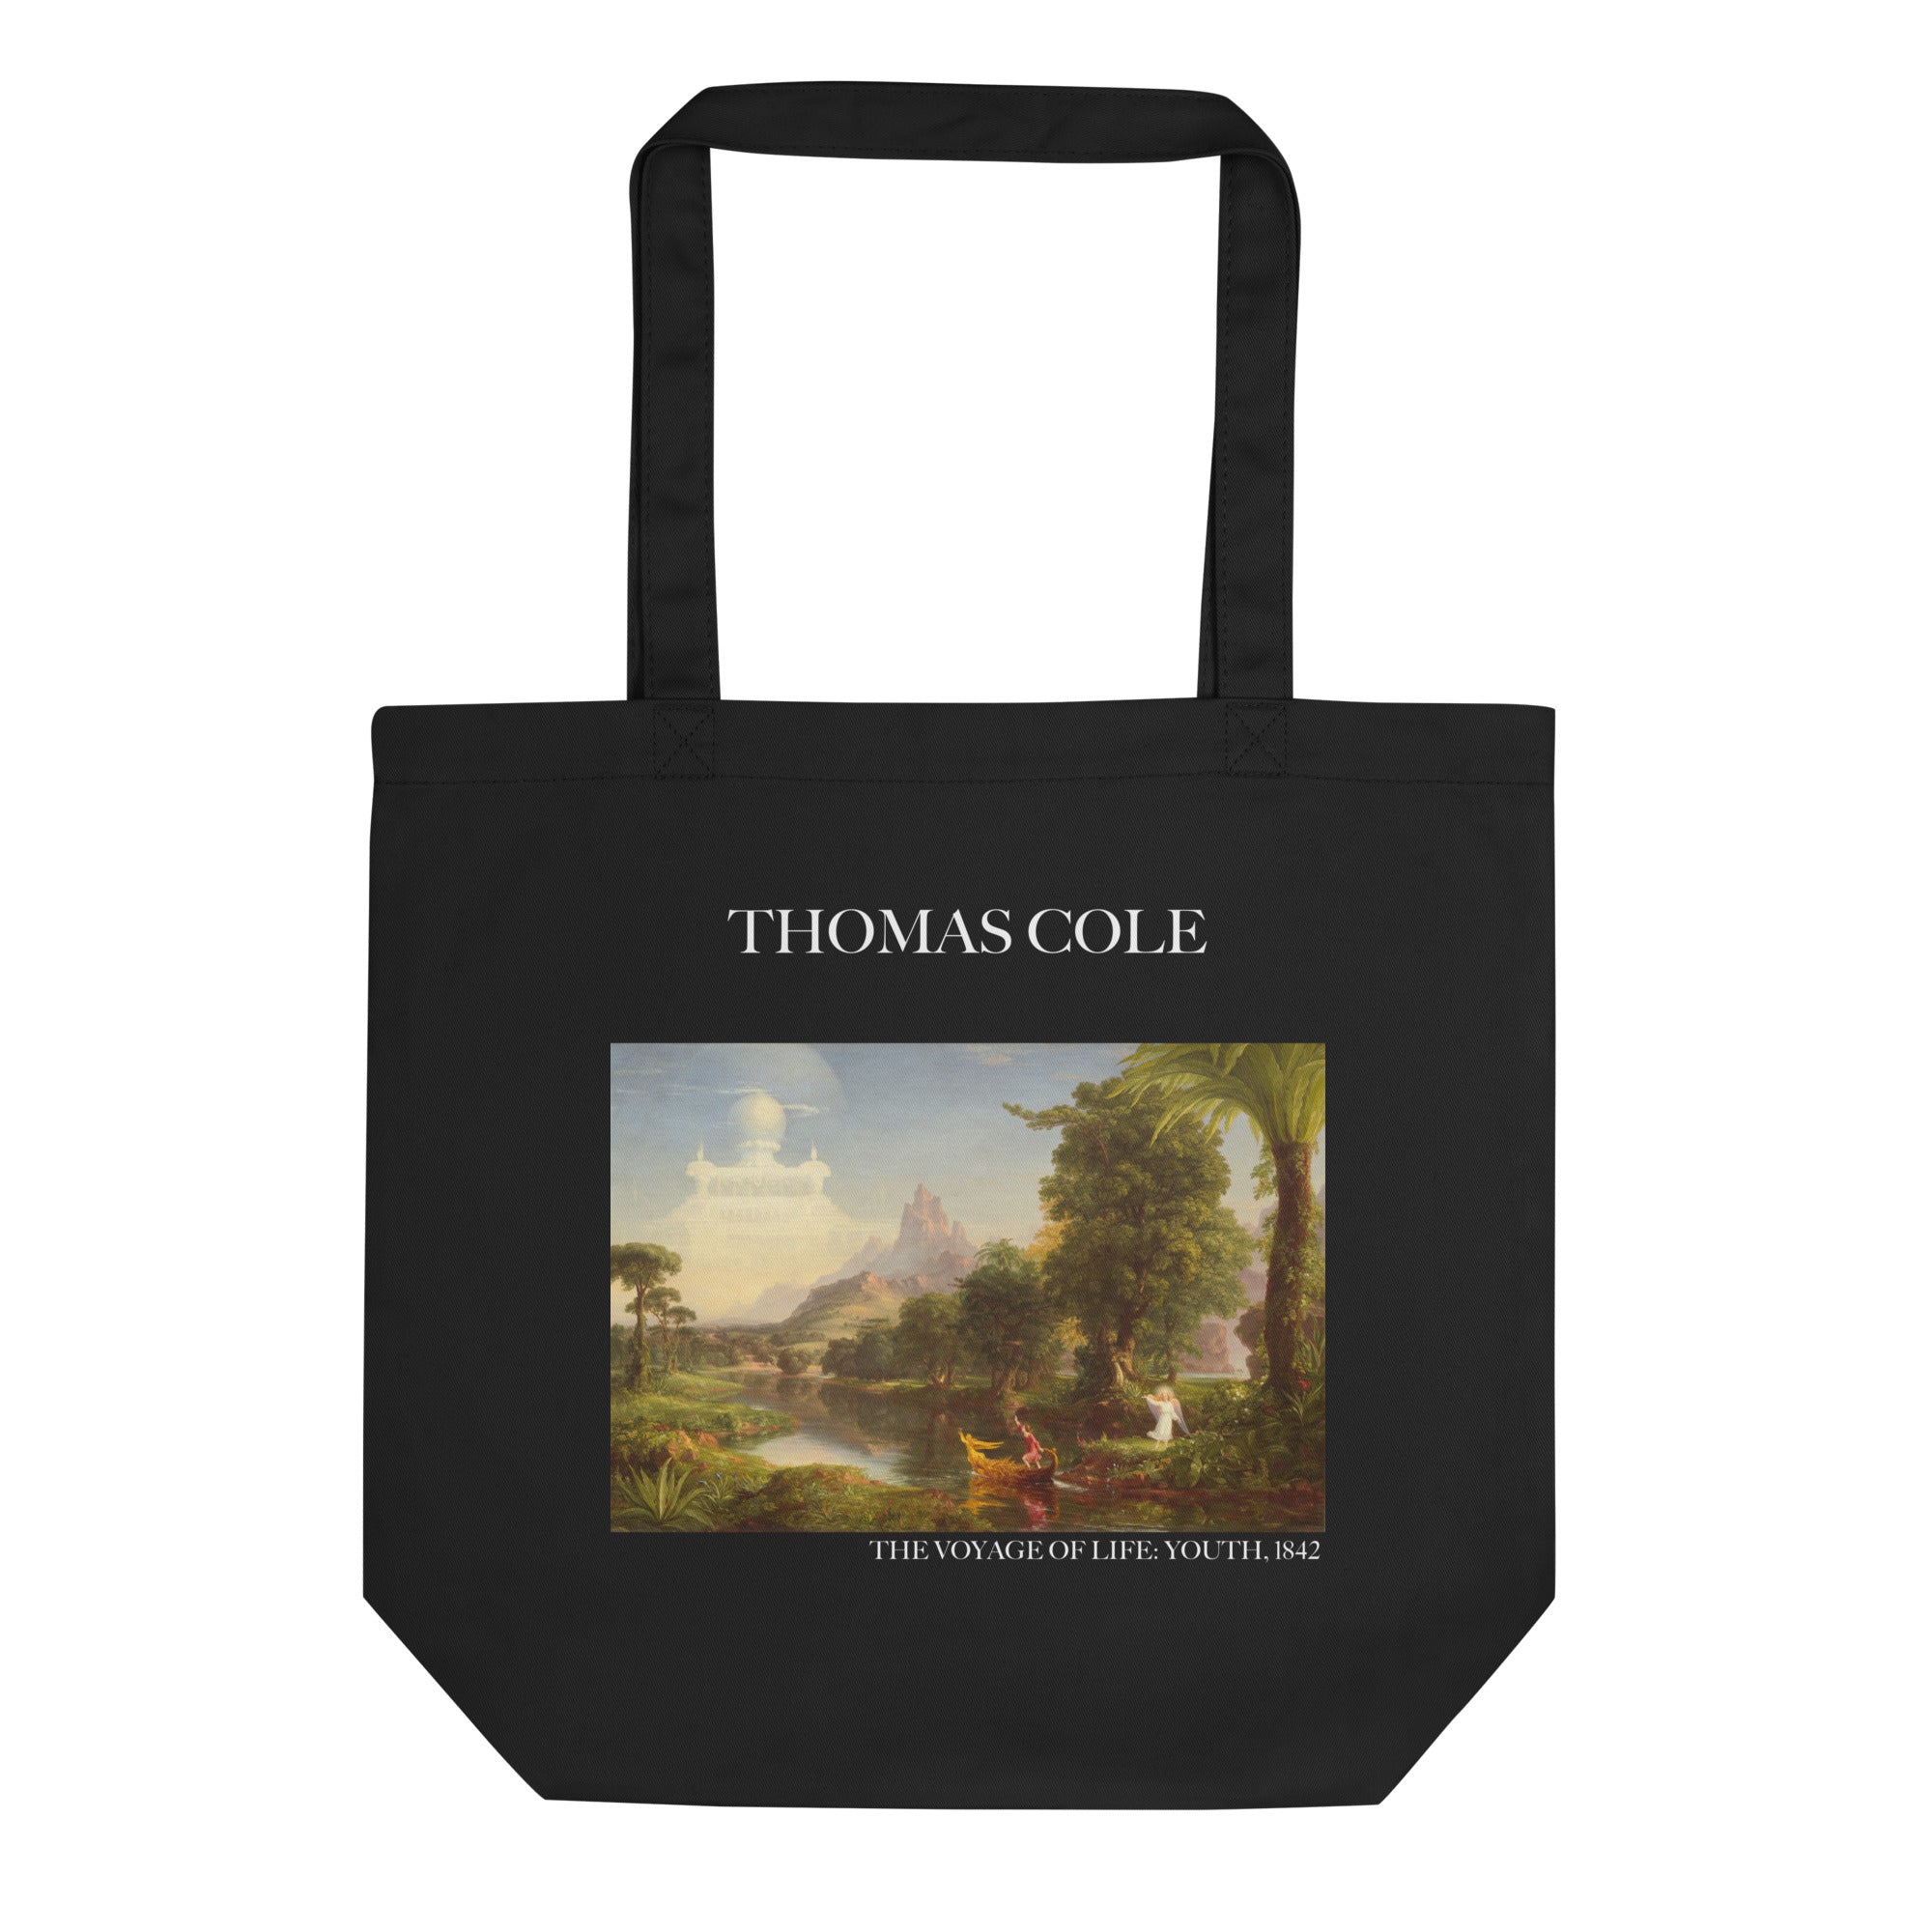 Thomas Cole 'Die Reise des Lebens: Jugend' berühmtes Gemälde Tragetasche | Umweltfreundliche Kunst Tragetasche